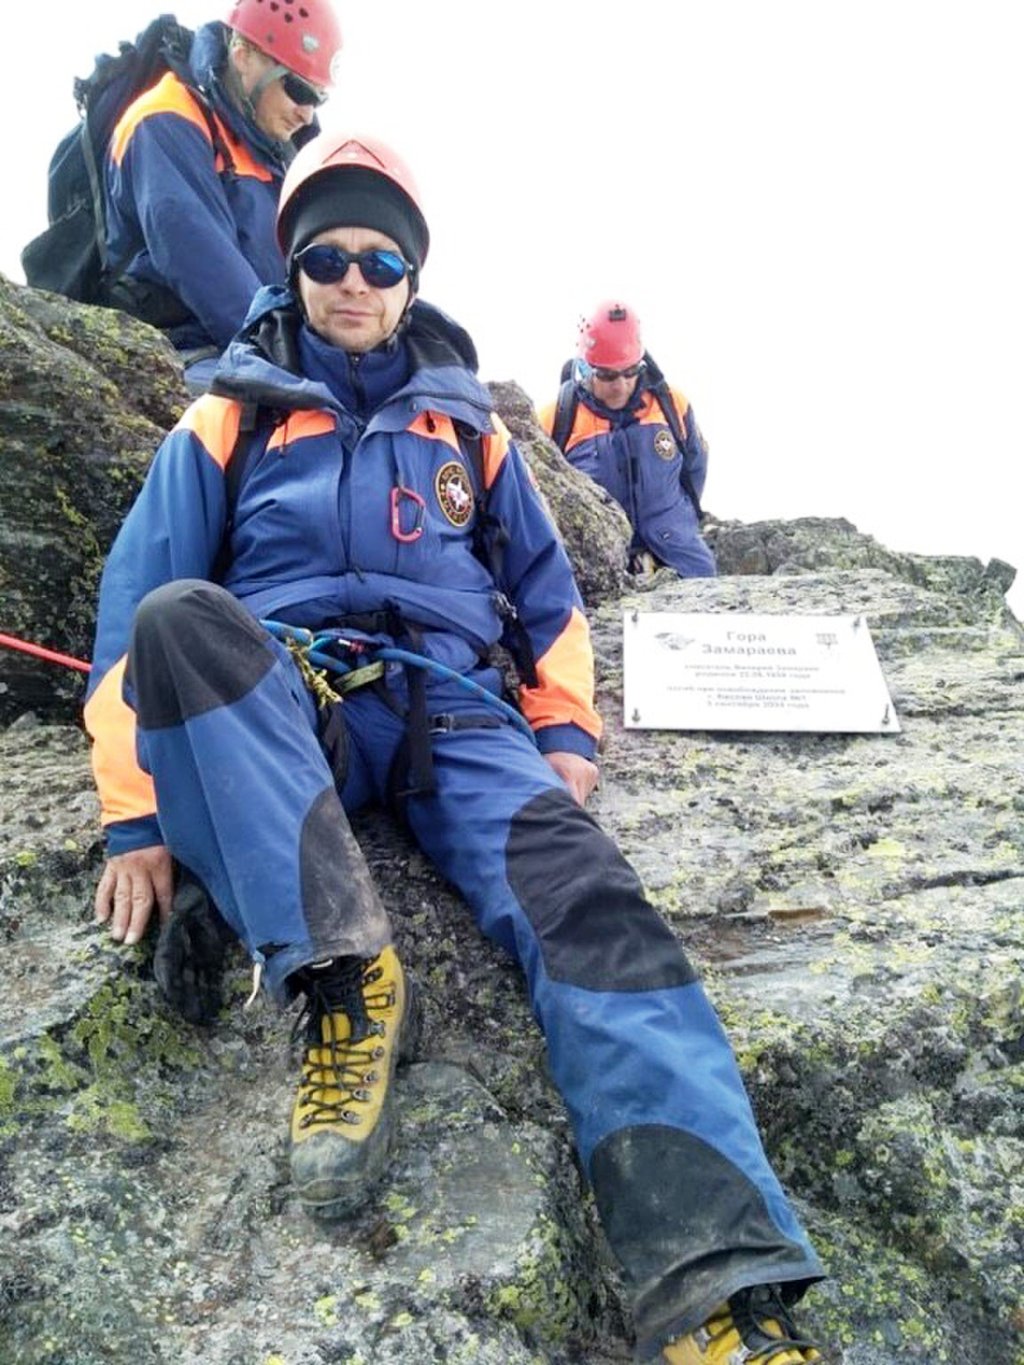 Спасатели МЧС России установили памятную доску на горе в Северной Осетии, названной в честь уроженца Лесного, Героя России Валерия Замараева